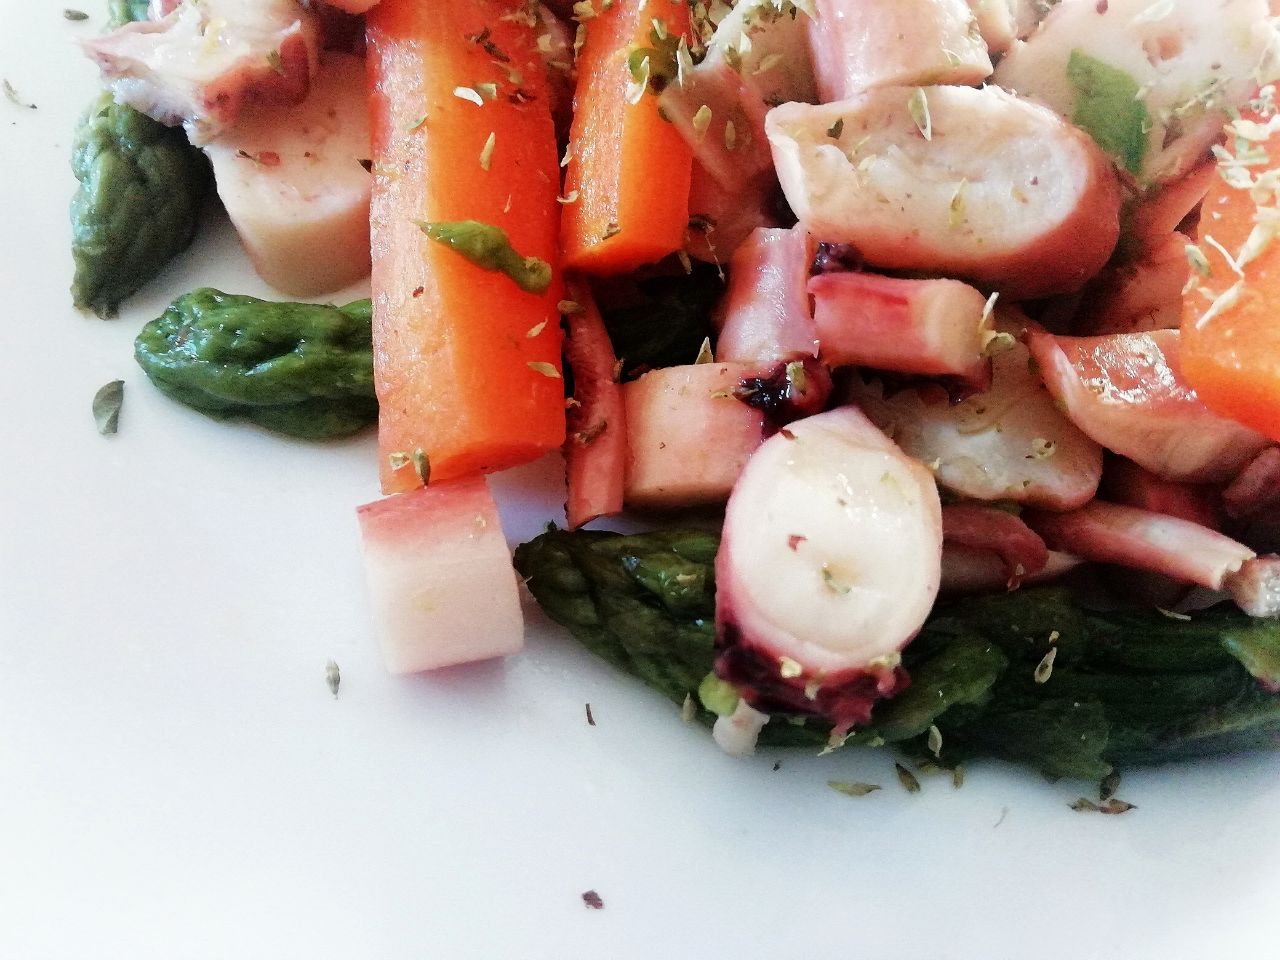 Secondi piatti leggeri a base di pesce: insalata di calamaro asparagi e carote!Secondi piatti leggeri a base di pesce: insalata di calamaro asparagi e carote!Secondi piatti leggeri a base di pesce: insalata di calamaro asparagi e carote!